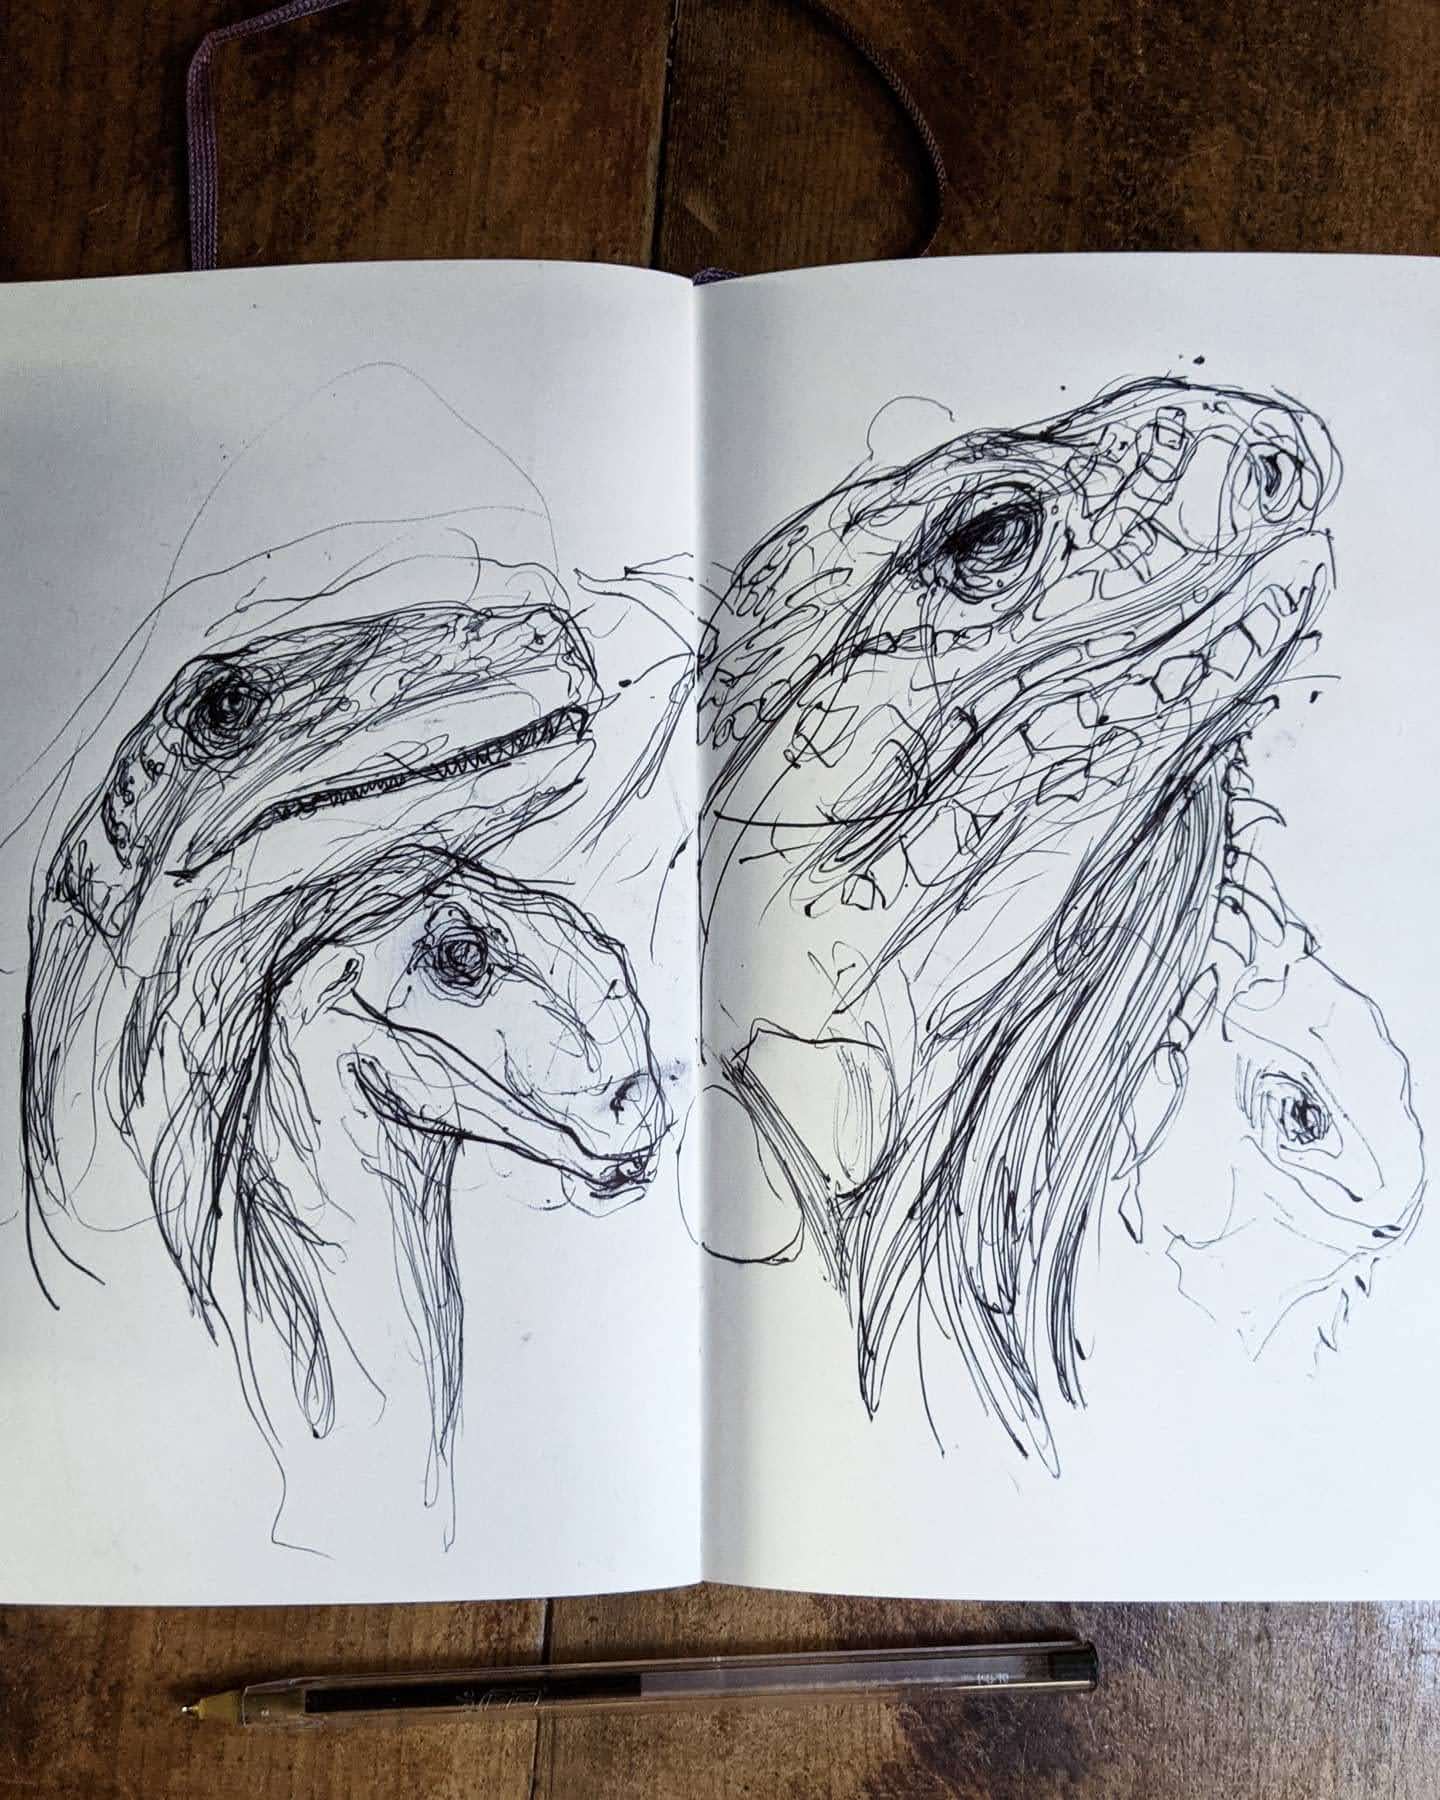 Velociraptor sketchbook drawings by Chris Wilson